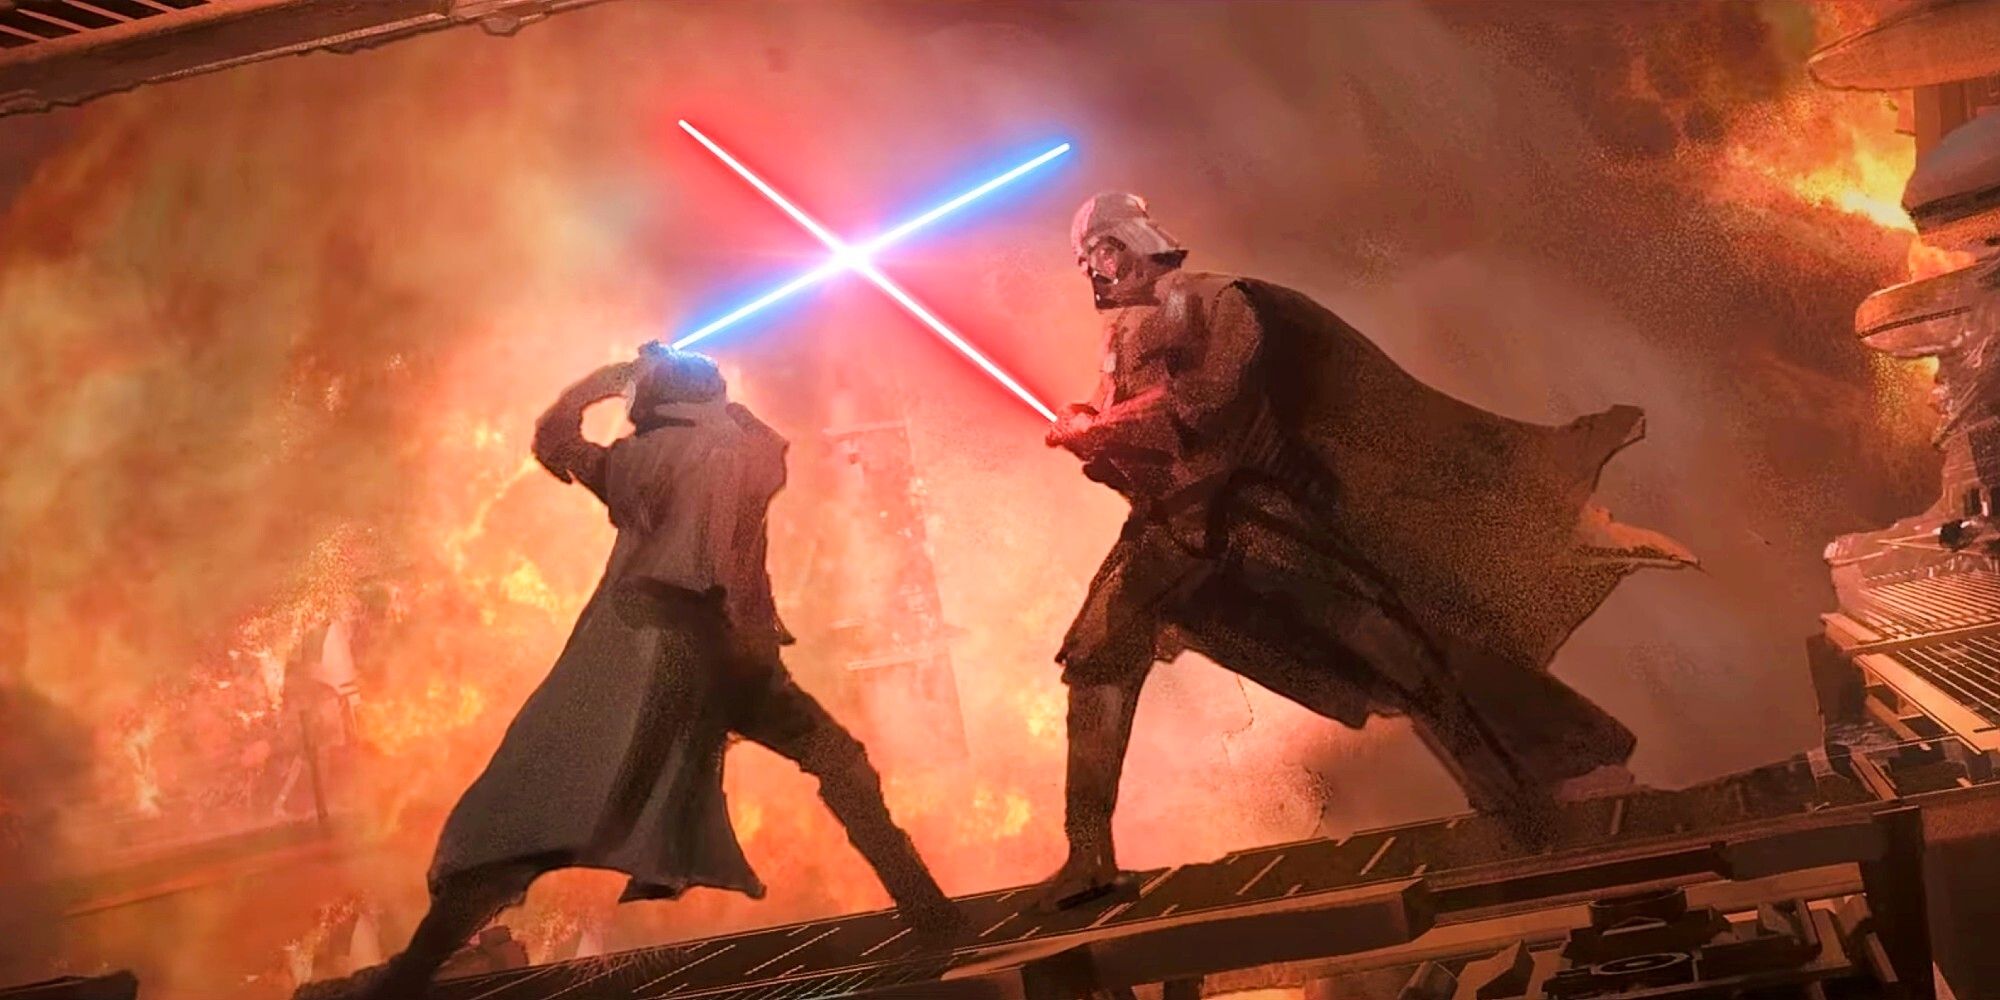 Concept art for Kenobi. Obi Wan and Darth Vadar Lightsaber battle.